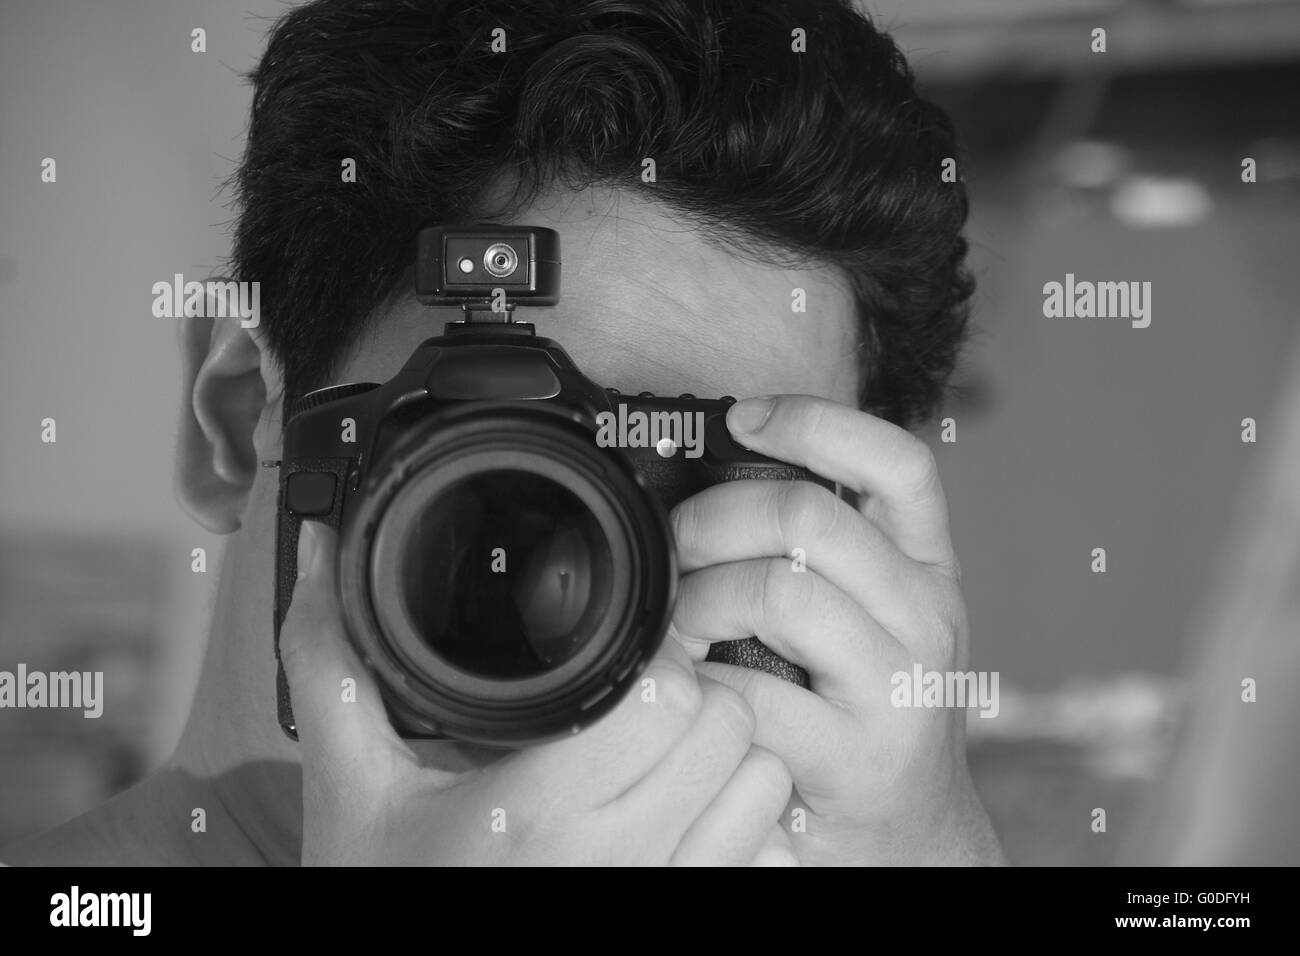 Photographe de prendre des photos avec son appareil photo en noir et blanc, monochrome Banque D'Images